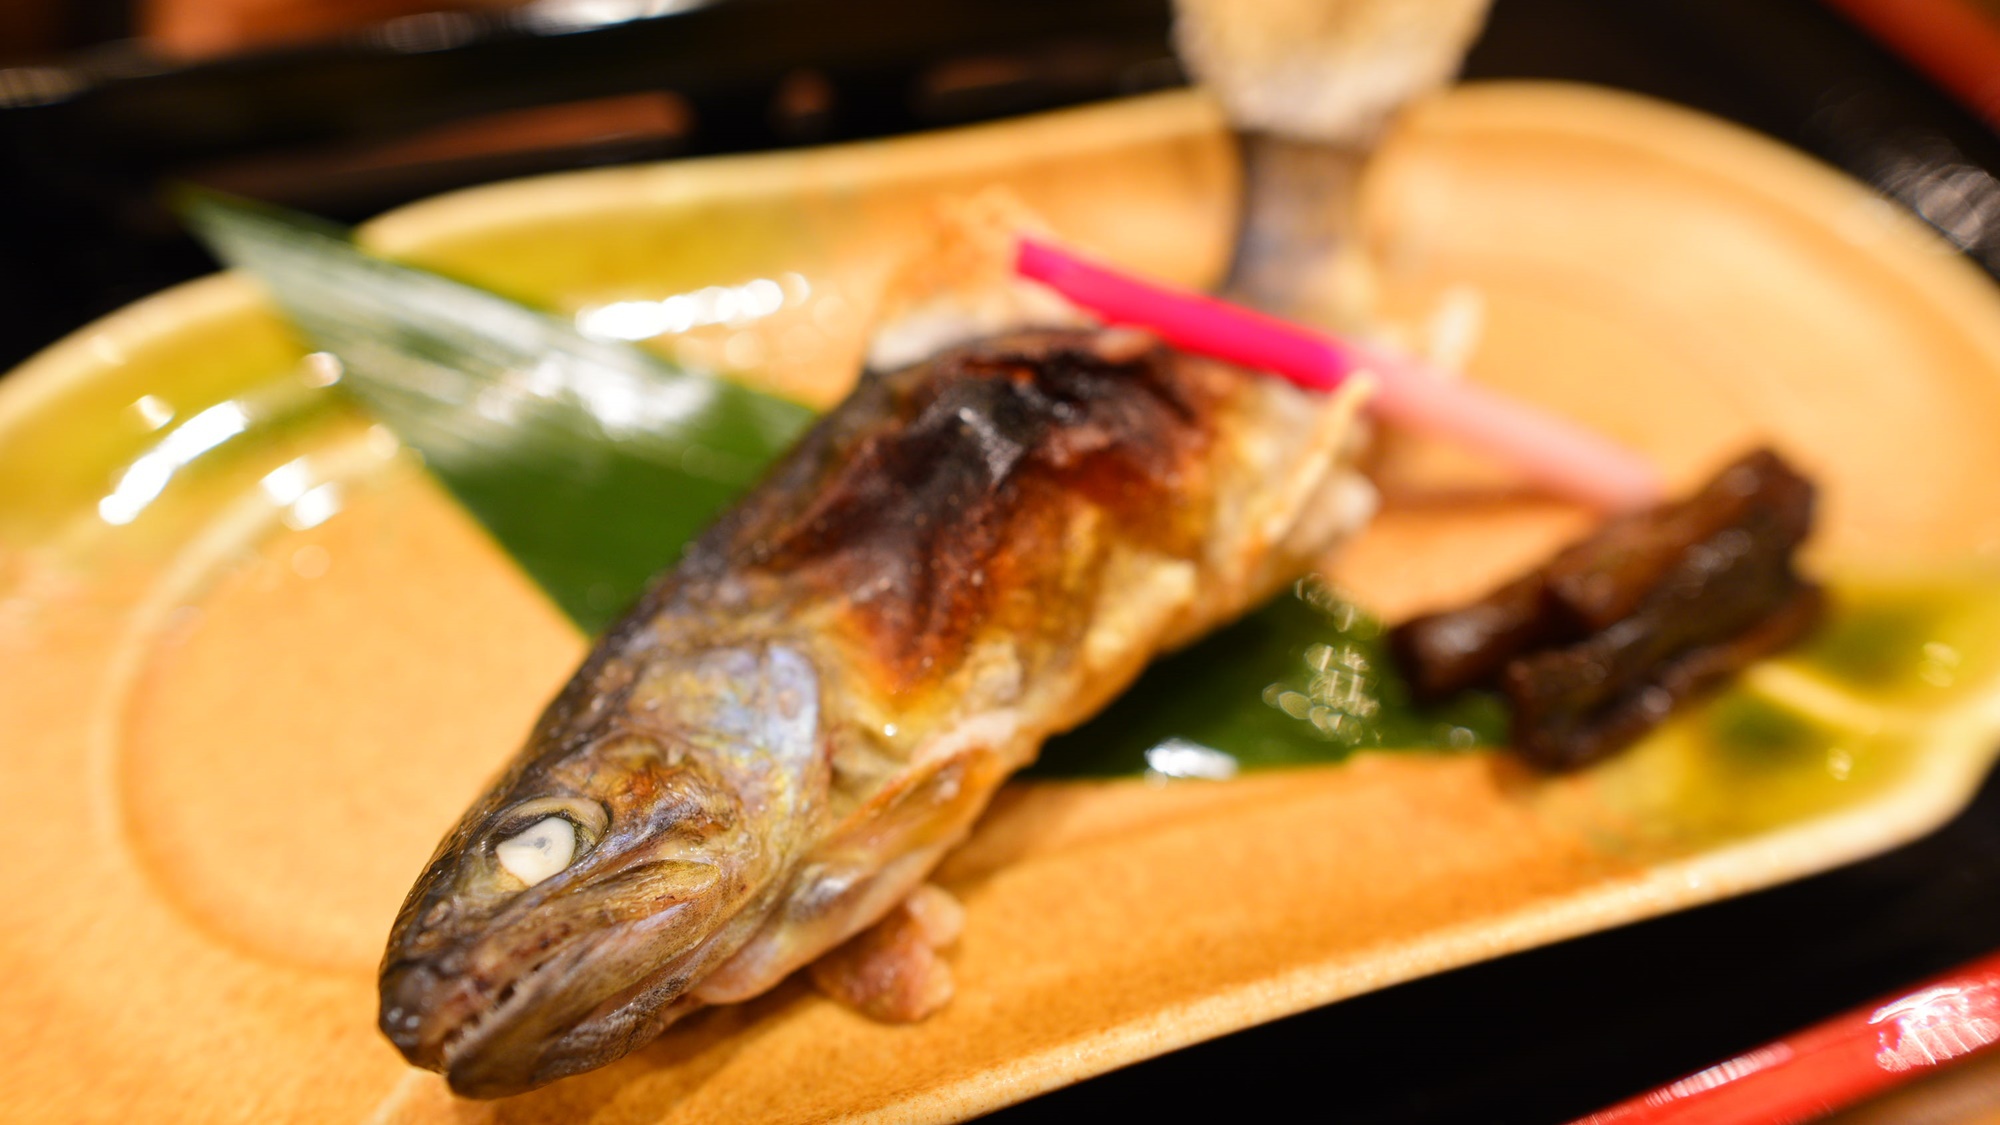 *夕食一例／清らかな清流で育った、岩魚を塩焼きでお愉しみください。